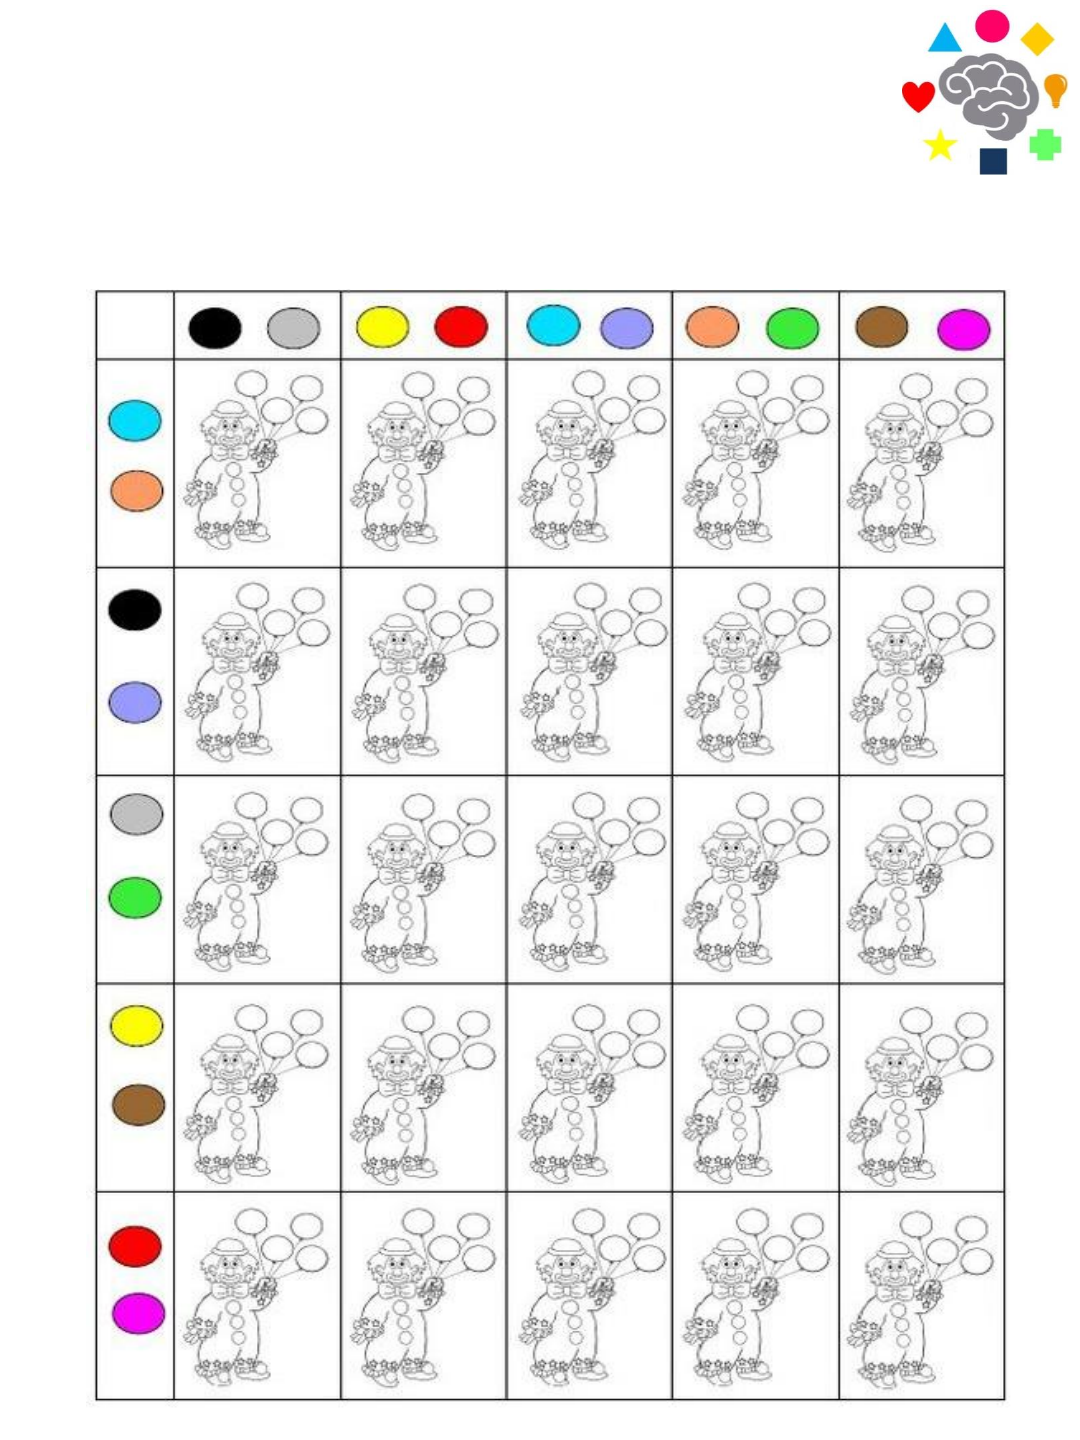 Caderno com Desenhos para Colorir de acordo com números  Páginas de  colorir com animais, Atividades de colorir, Numeros para colorir